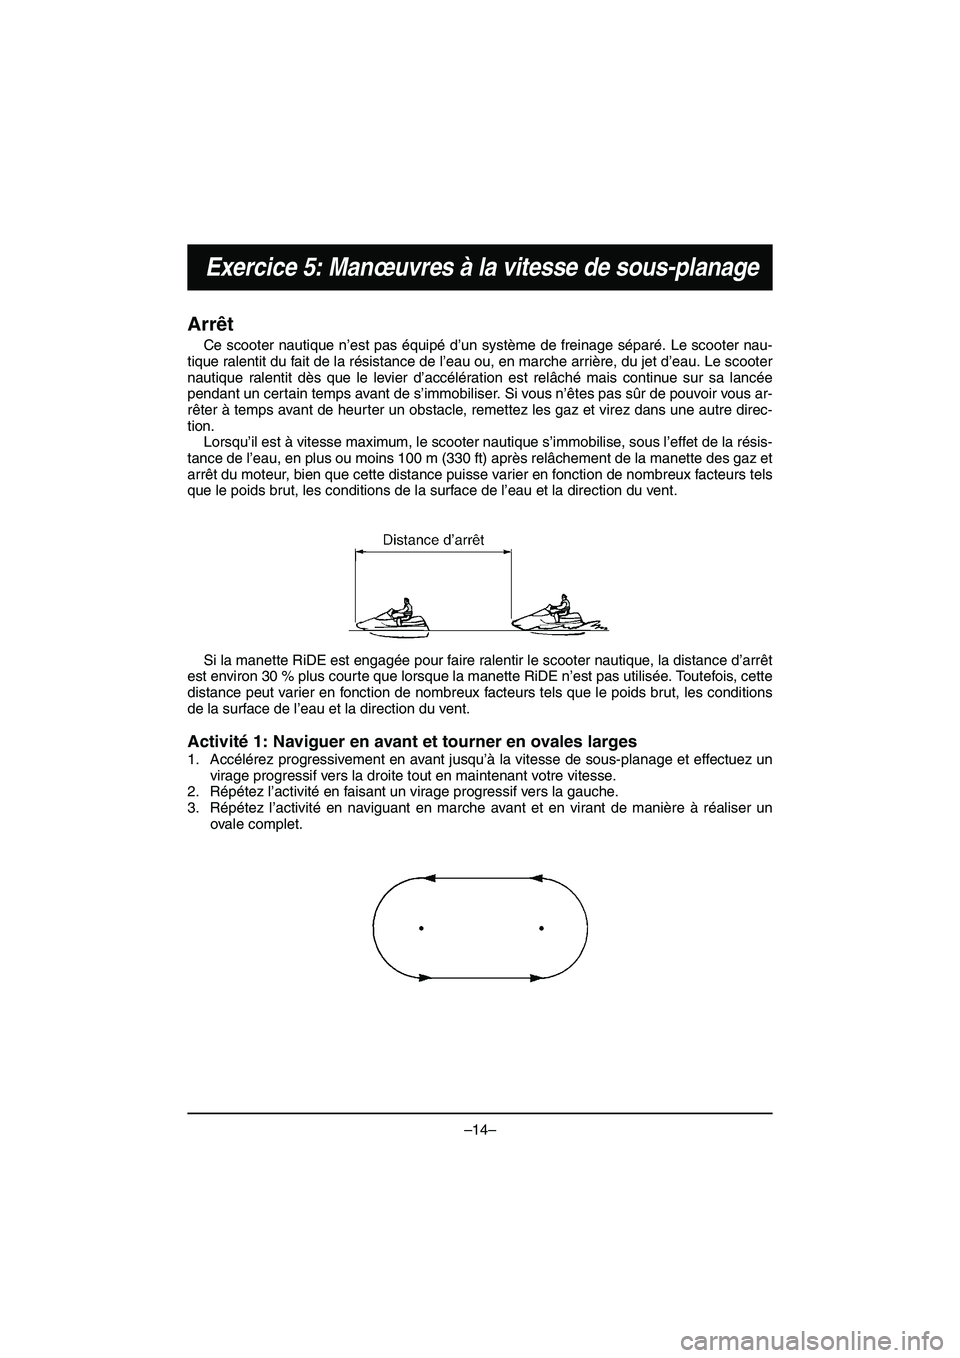 YAMAHA VX DELUXE 2015  Manual de utilização (in Portuguese) –14–
Exercice 5: Manœuvres à la vitesse de sous-planage
Arrêt
Ce scooter nautique n’est pas équipé d’un système de freinage séparé. Le scooter nau-
tique ralentit du fait de la résist